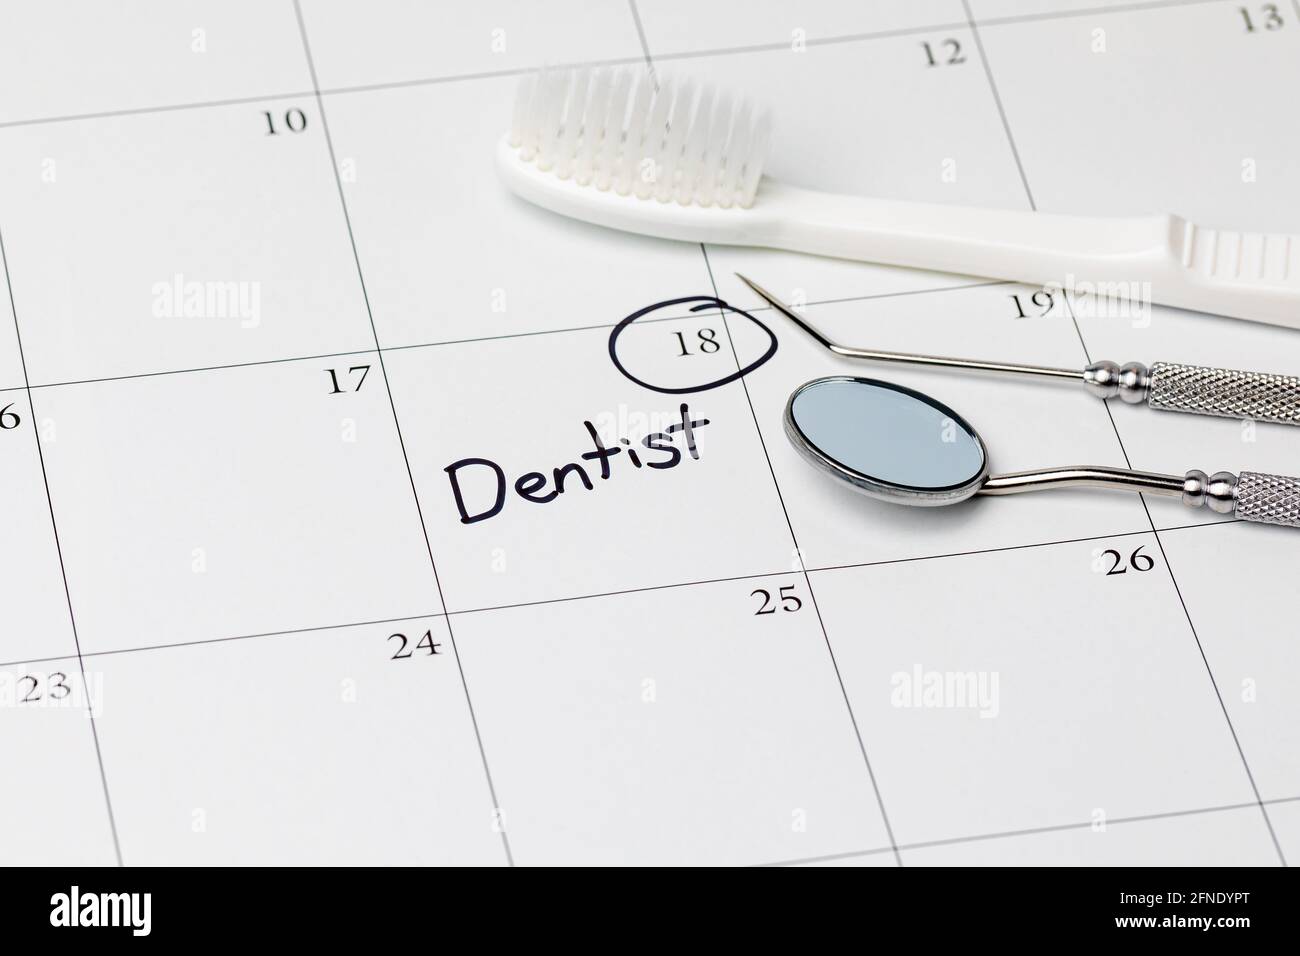 Rappel de rendez-vous chez le dentiste sur le calendrier avec brosse à dents et outils dentaires. Concept de santé bucco-dentaire, examen dentaire et nettoyage des dents Banque D'Images